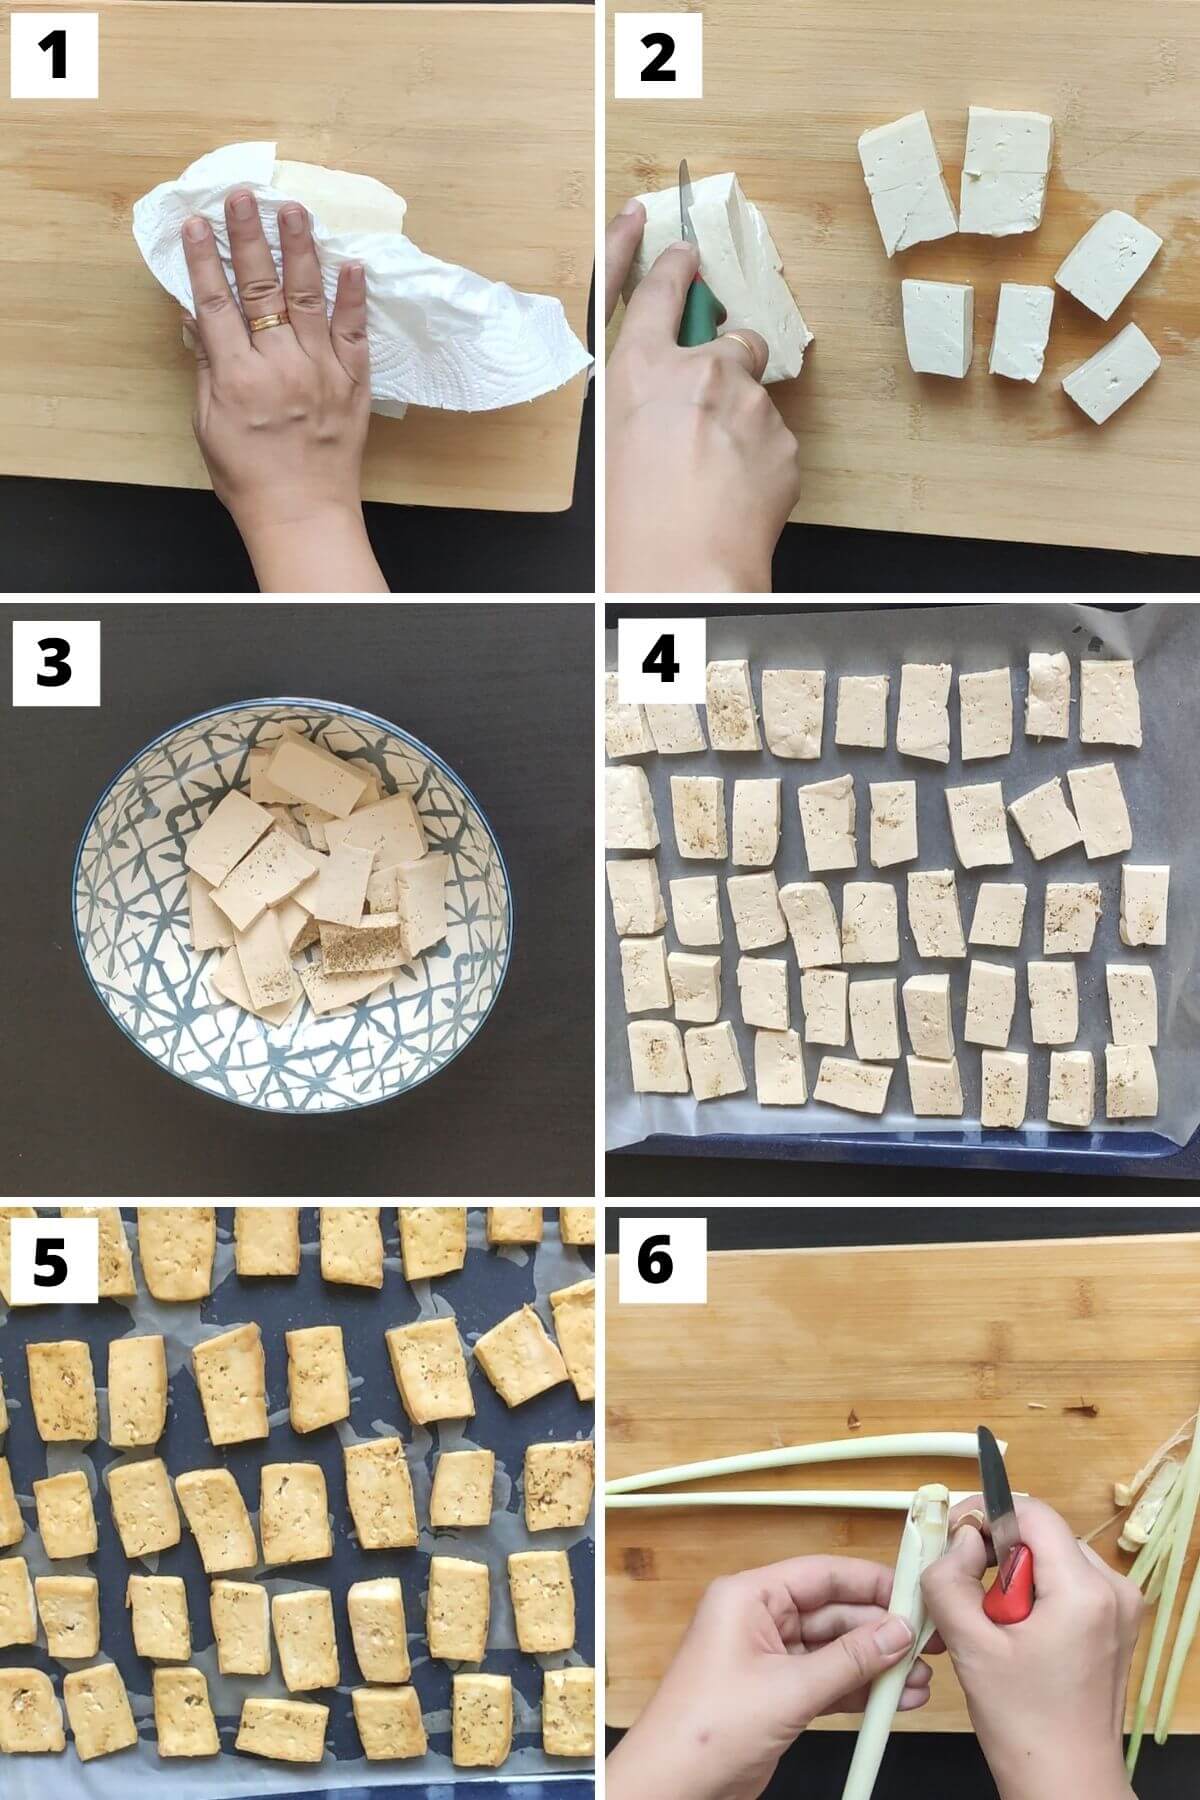 Steps 1 to 6 to make lemongrass chili tofu.